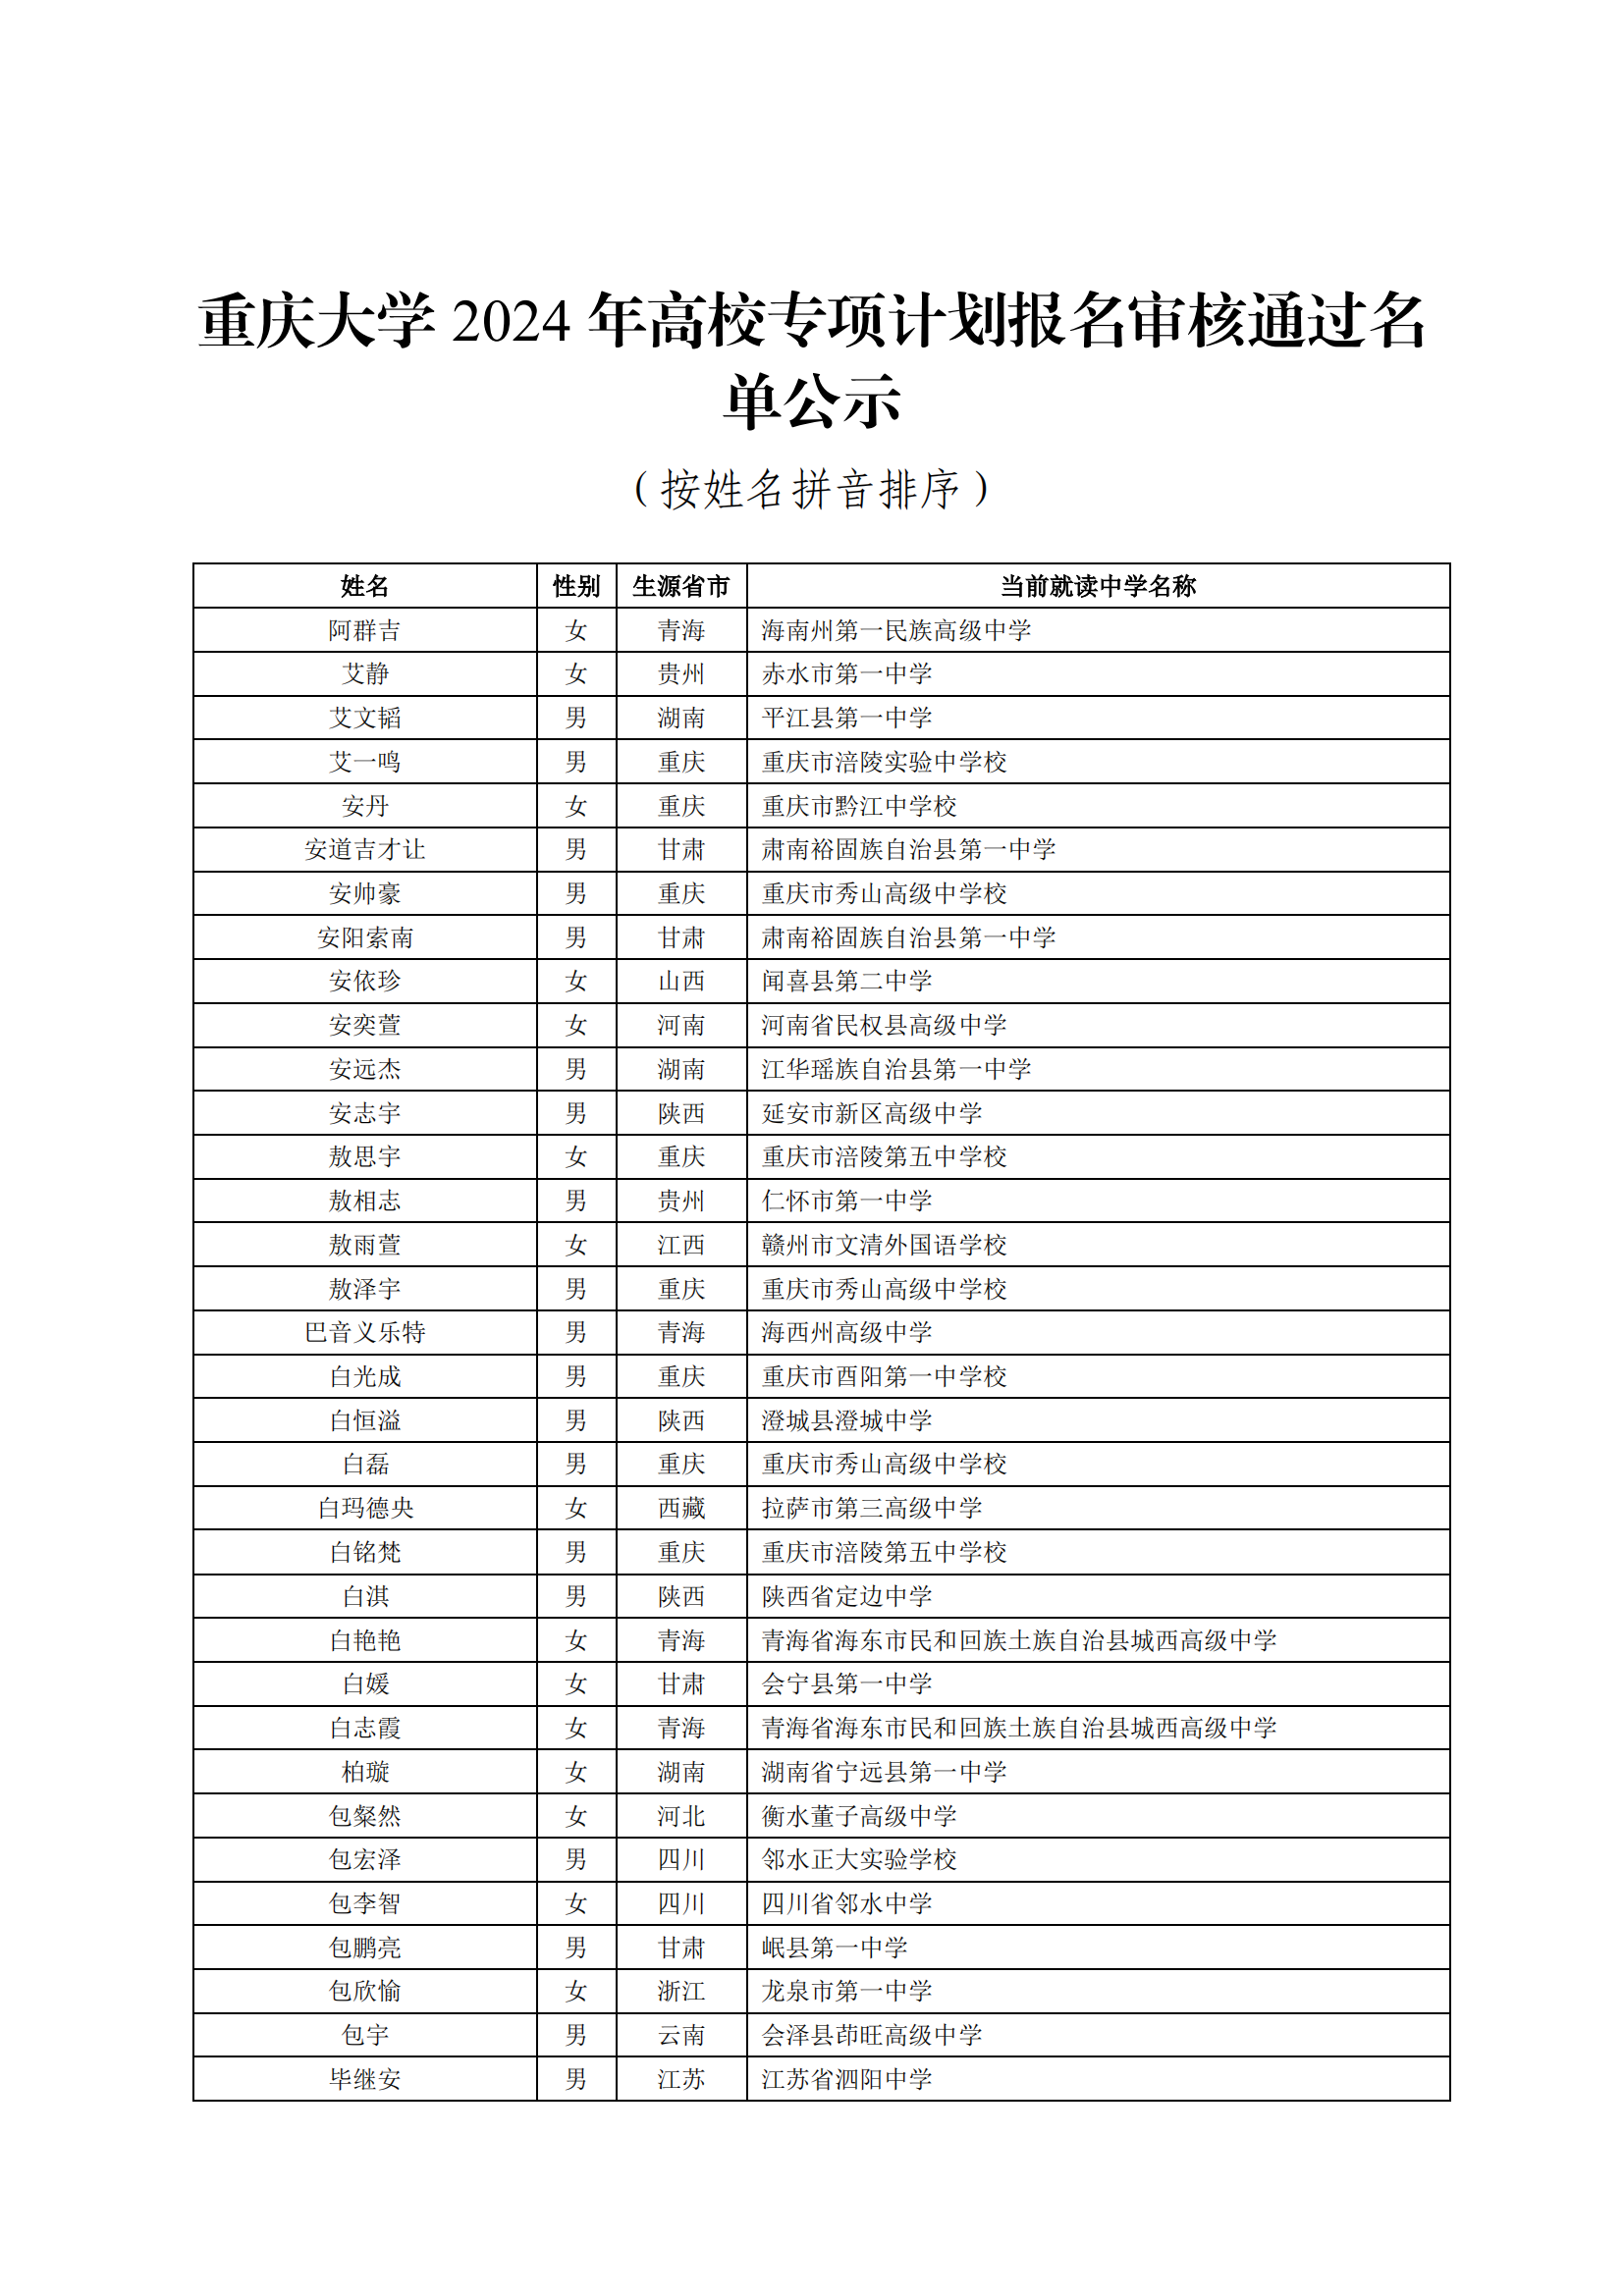 重庆大学2024年高校专项计划初审名单